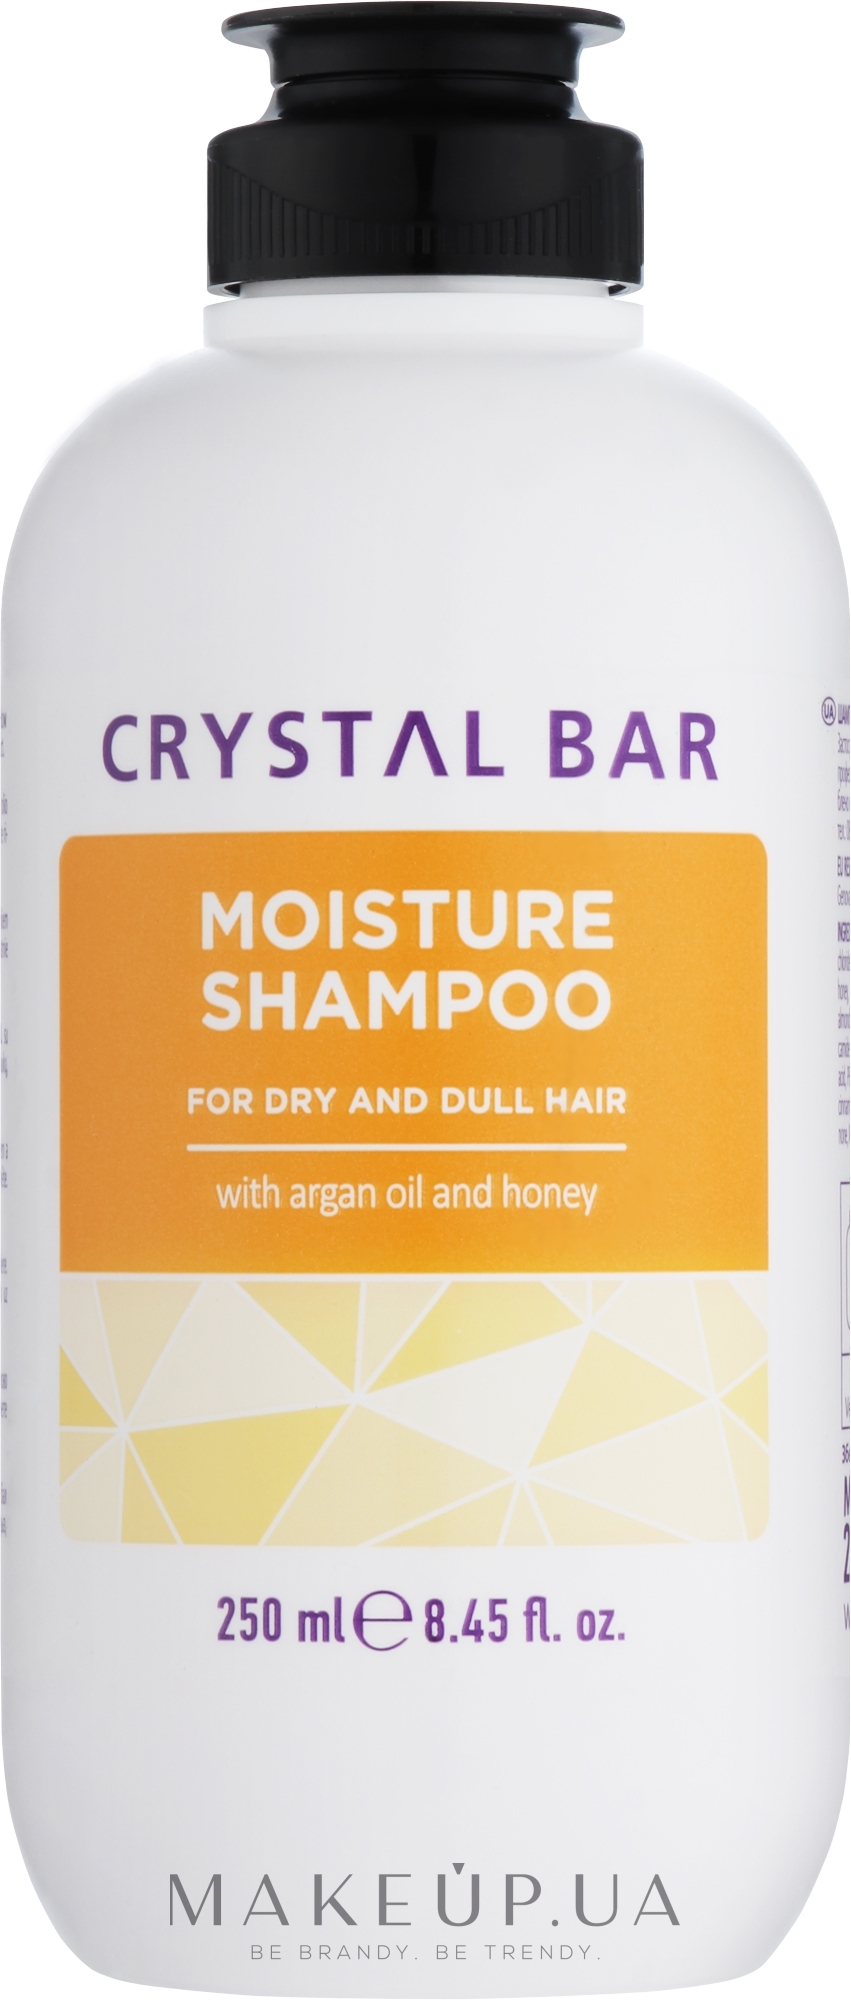 Зволожуючий шампунь для волосся - Unic Crystal Bar Moisture Shampoo — фото 250ml